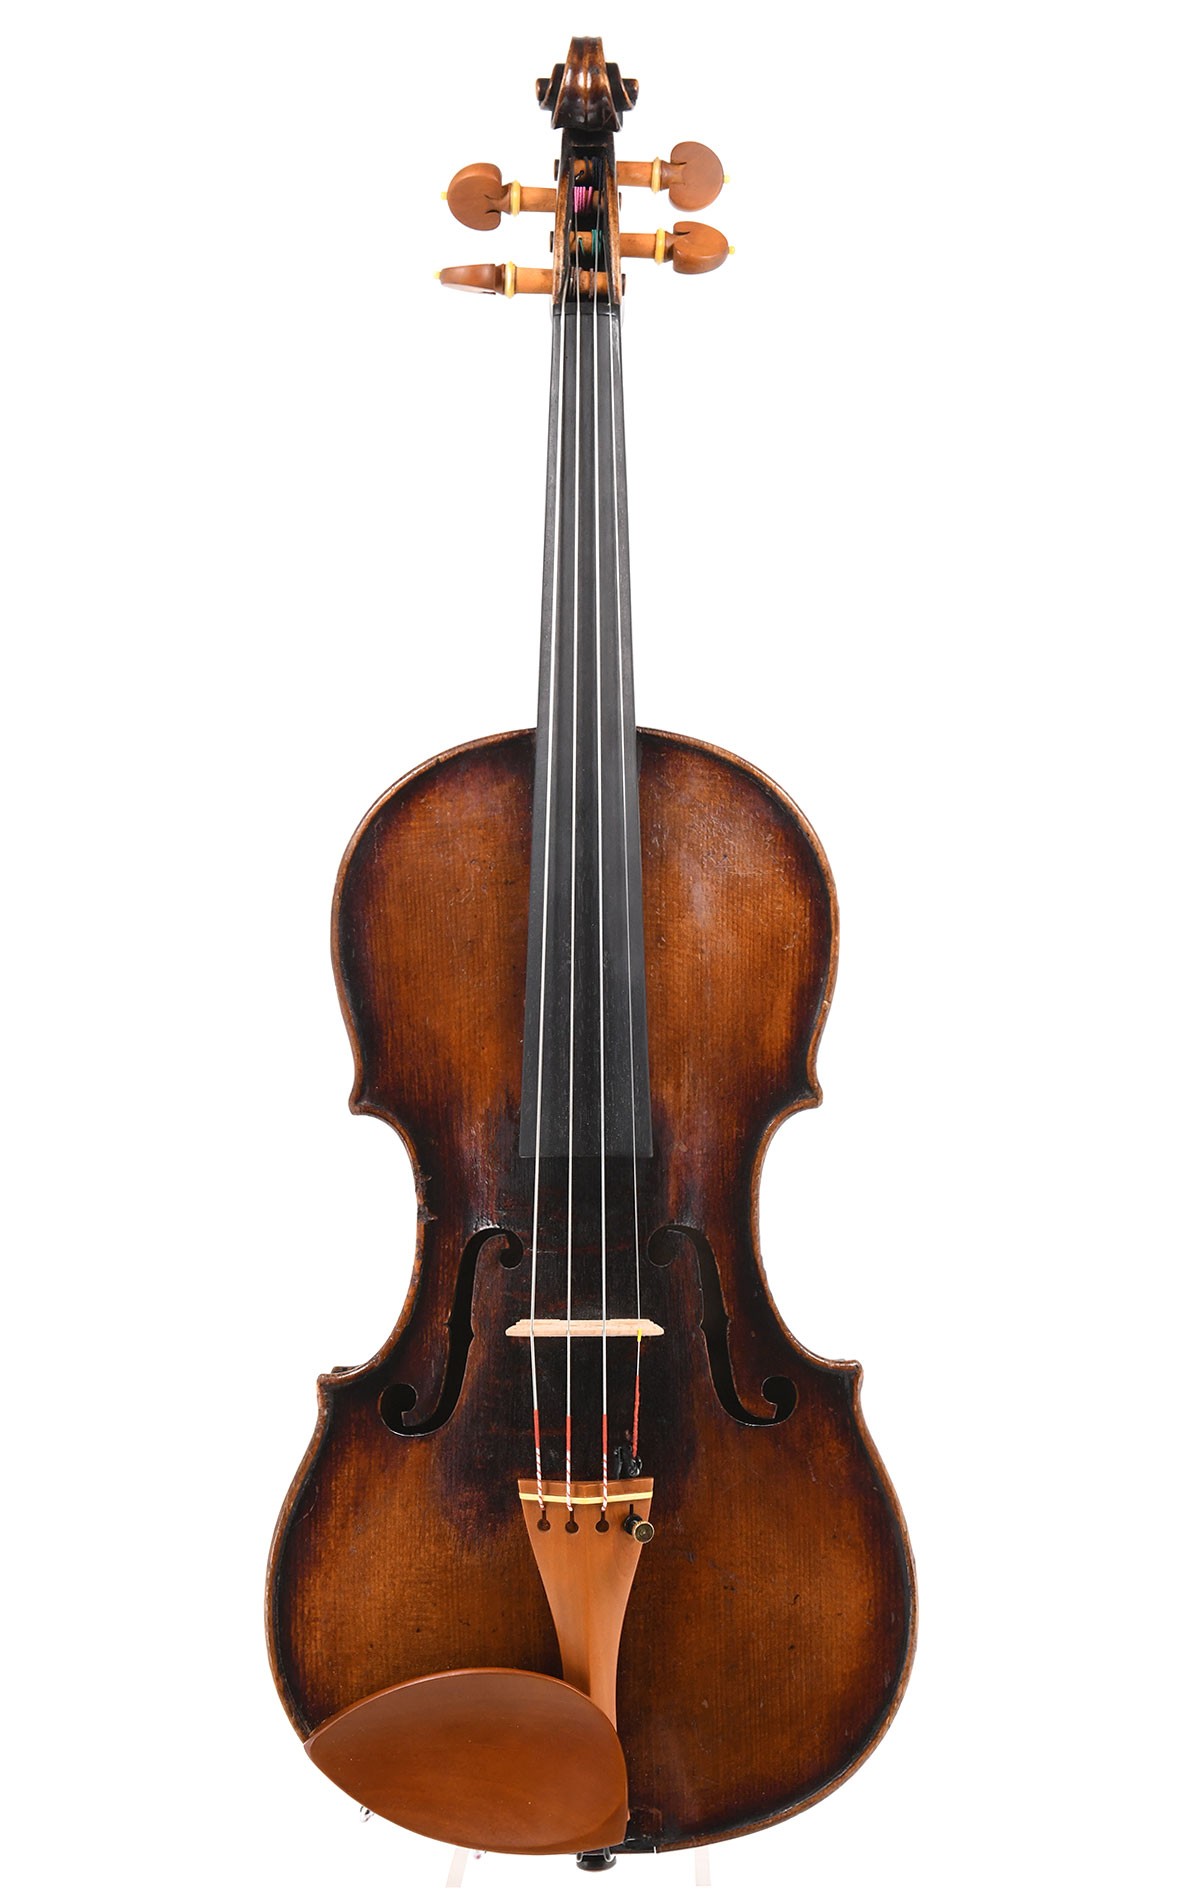 labios intersección No hagas Antique Bohemian violin after Jacobus Stainer - violinist recommendation!